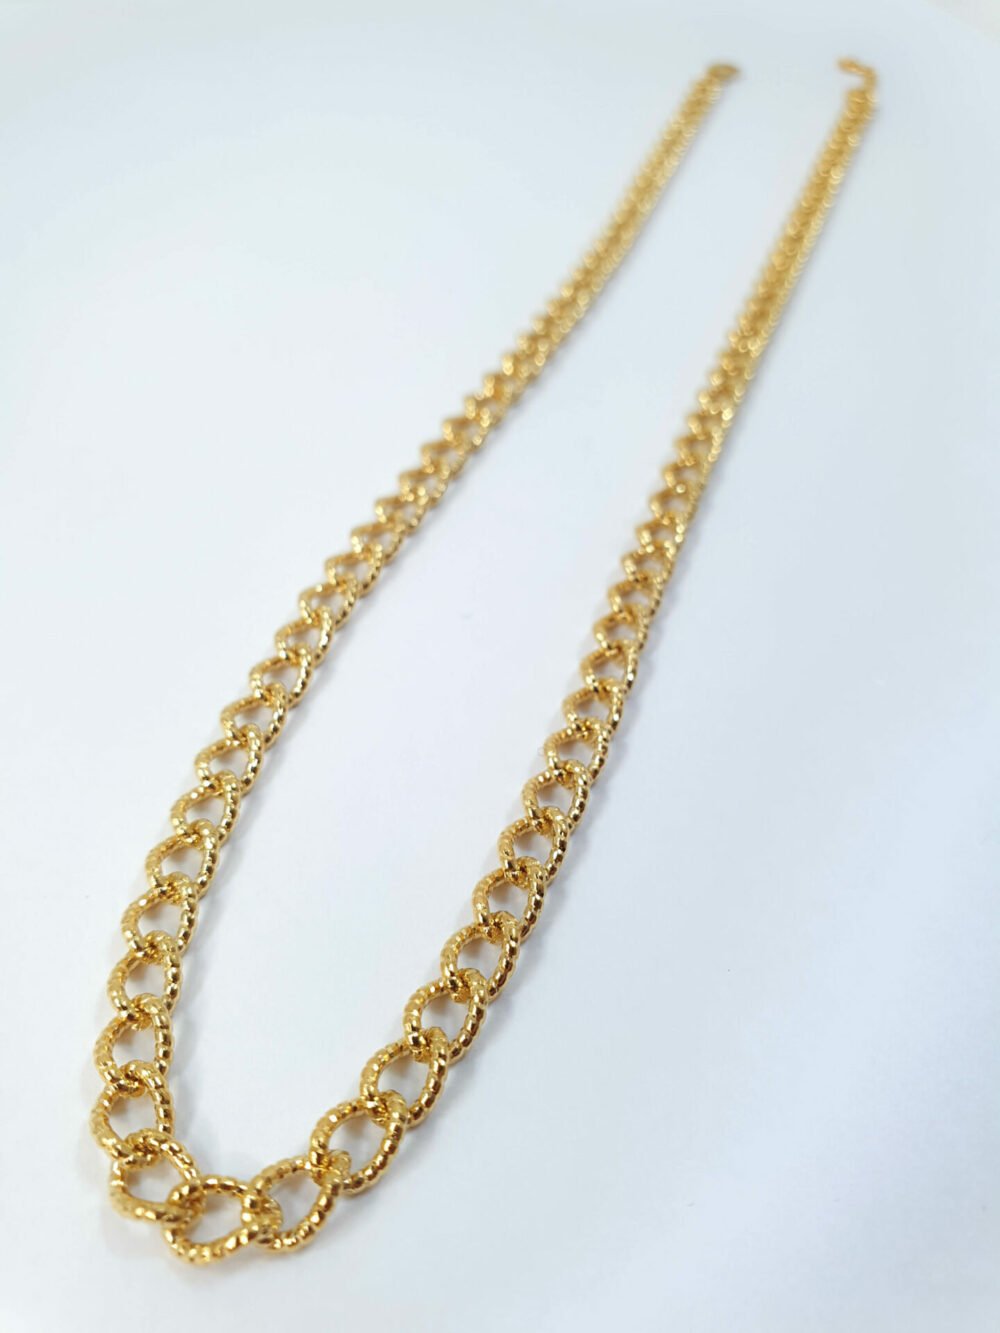 bijoux femme barcelone acier inoxydable laiton plaqué or doré fait main collier délicat jolie chaine grosse épaisse